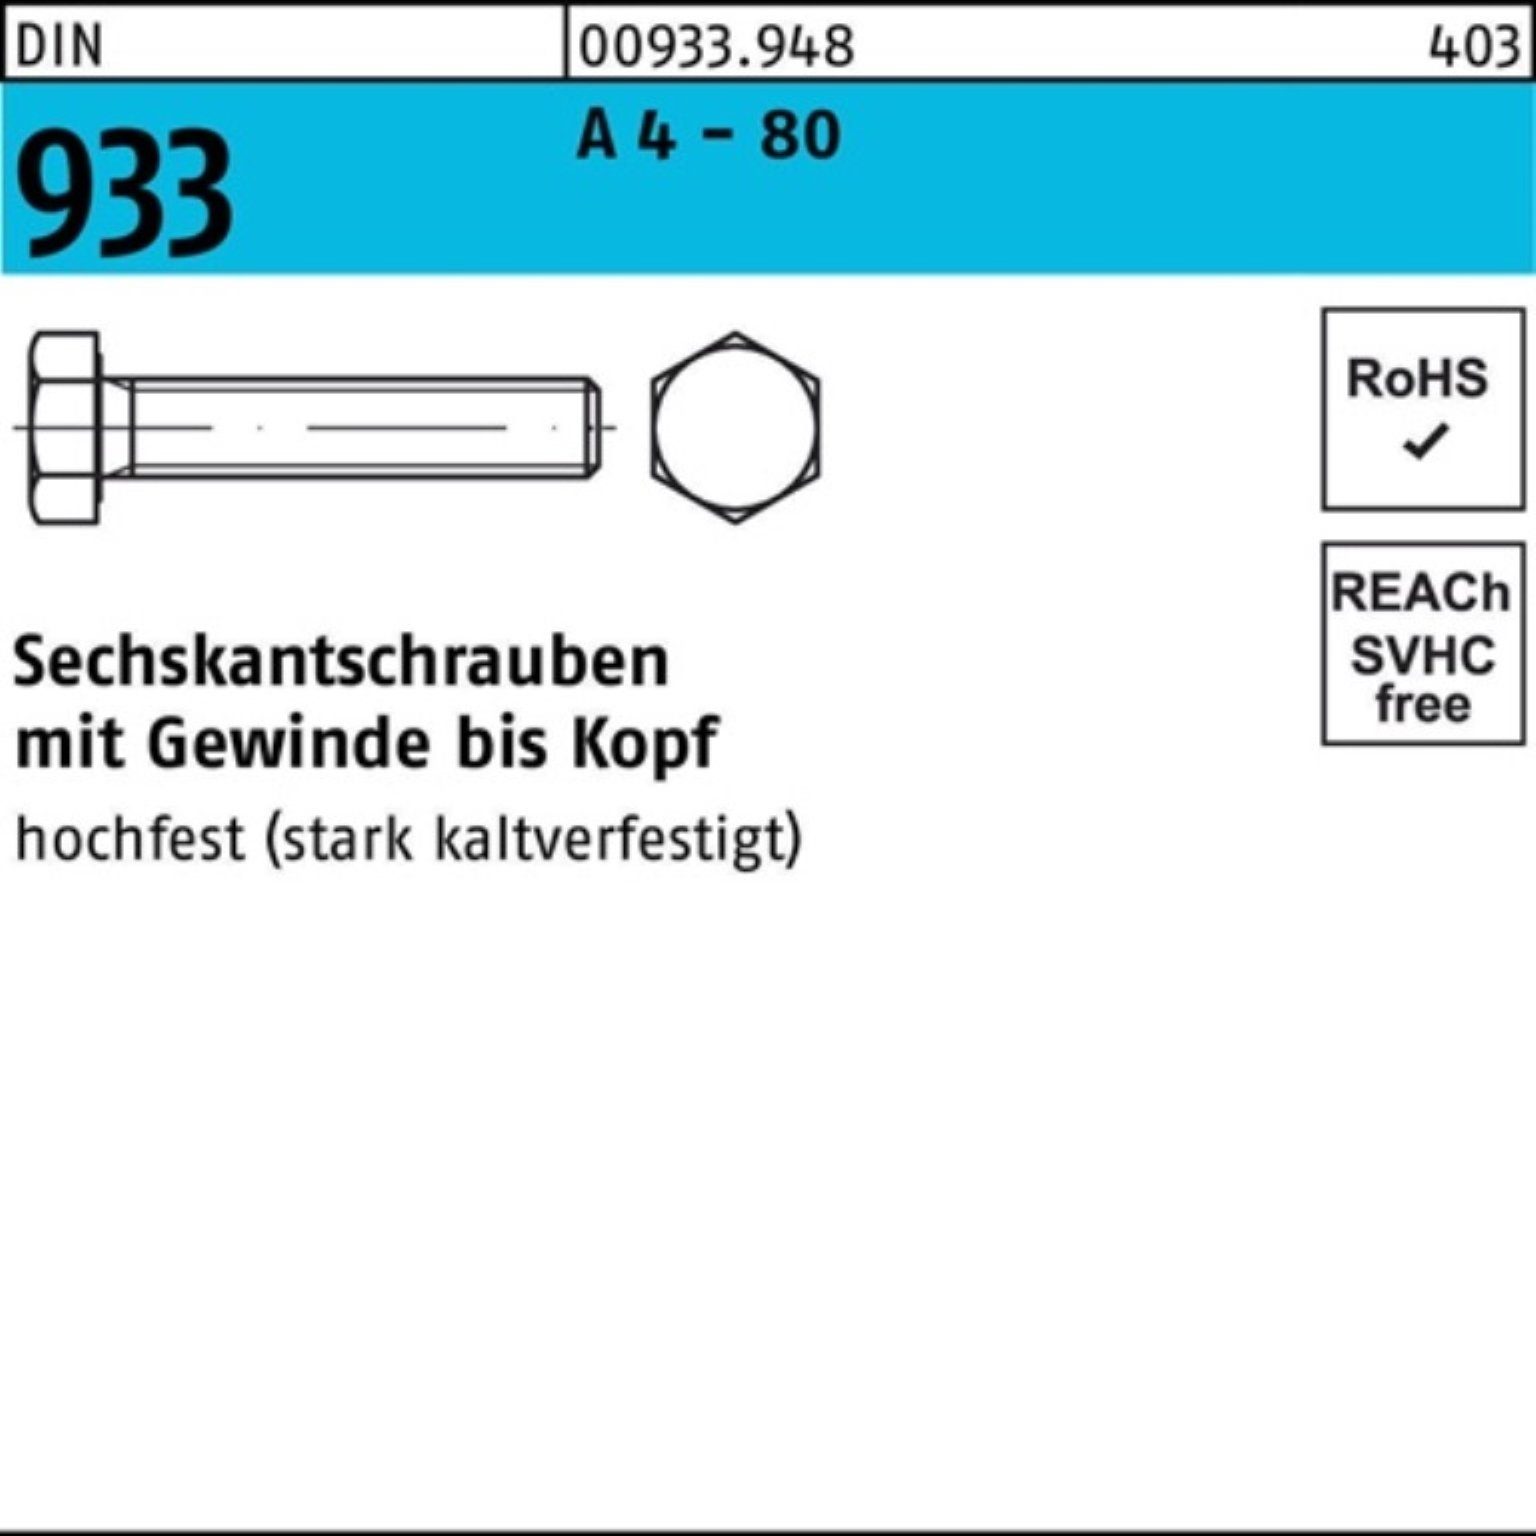 Reyher Sechskantschraube 100er Pack Sechskantschraube DIN 933 VG M8x 16 A 4 - 80 100 Stück DIN